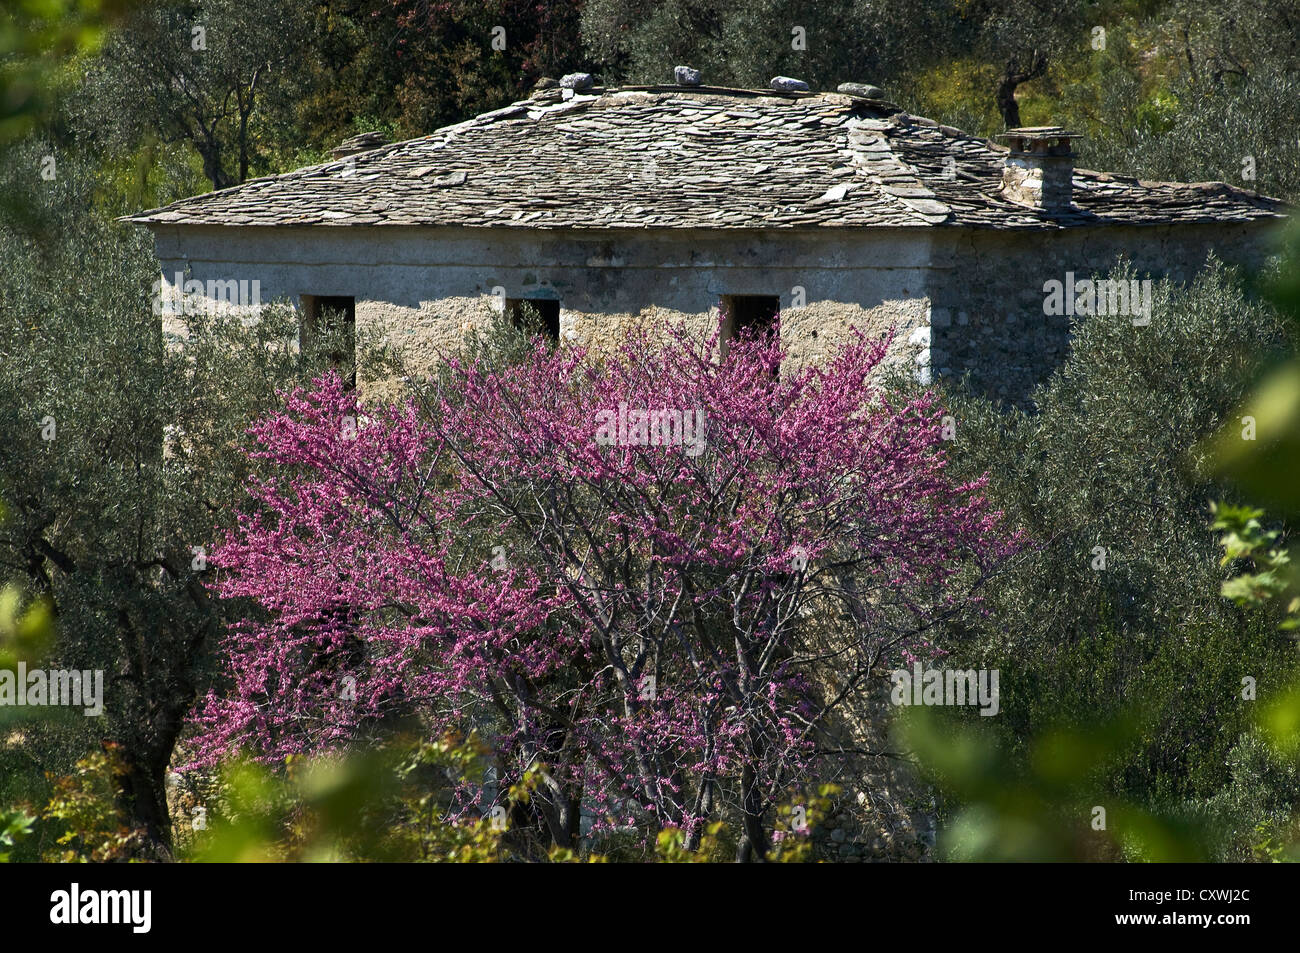 Vieille maison abandonnée avec un toit en ardoise derrière un arbre de Judée à fleurs Banque D'Images